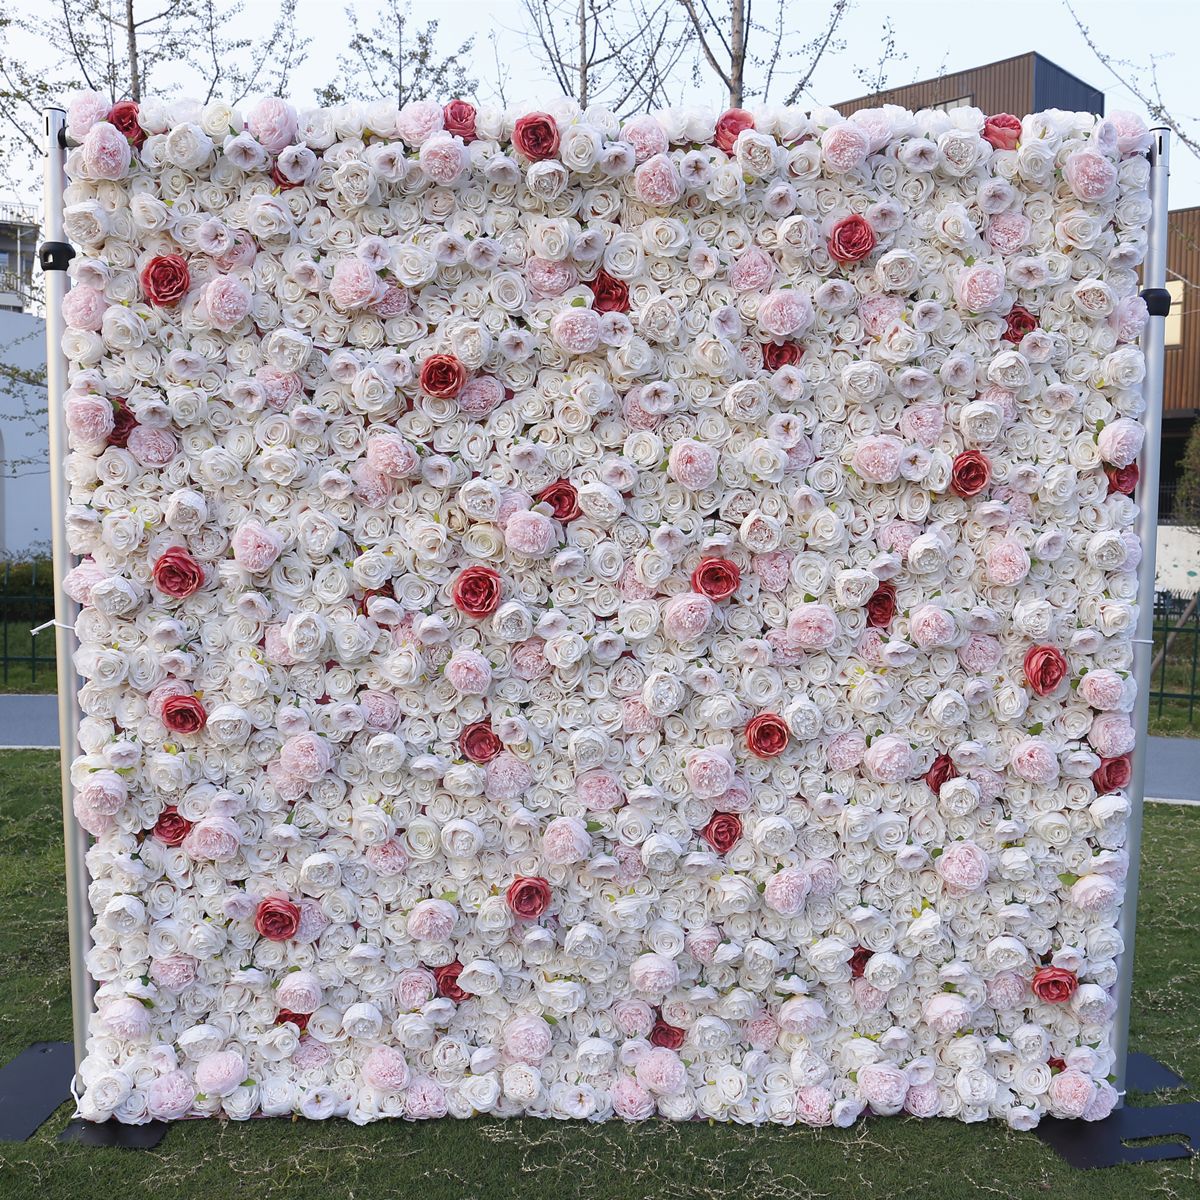  人工ピンクの布底シミュレーション花壁結婚式の装飾 